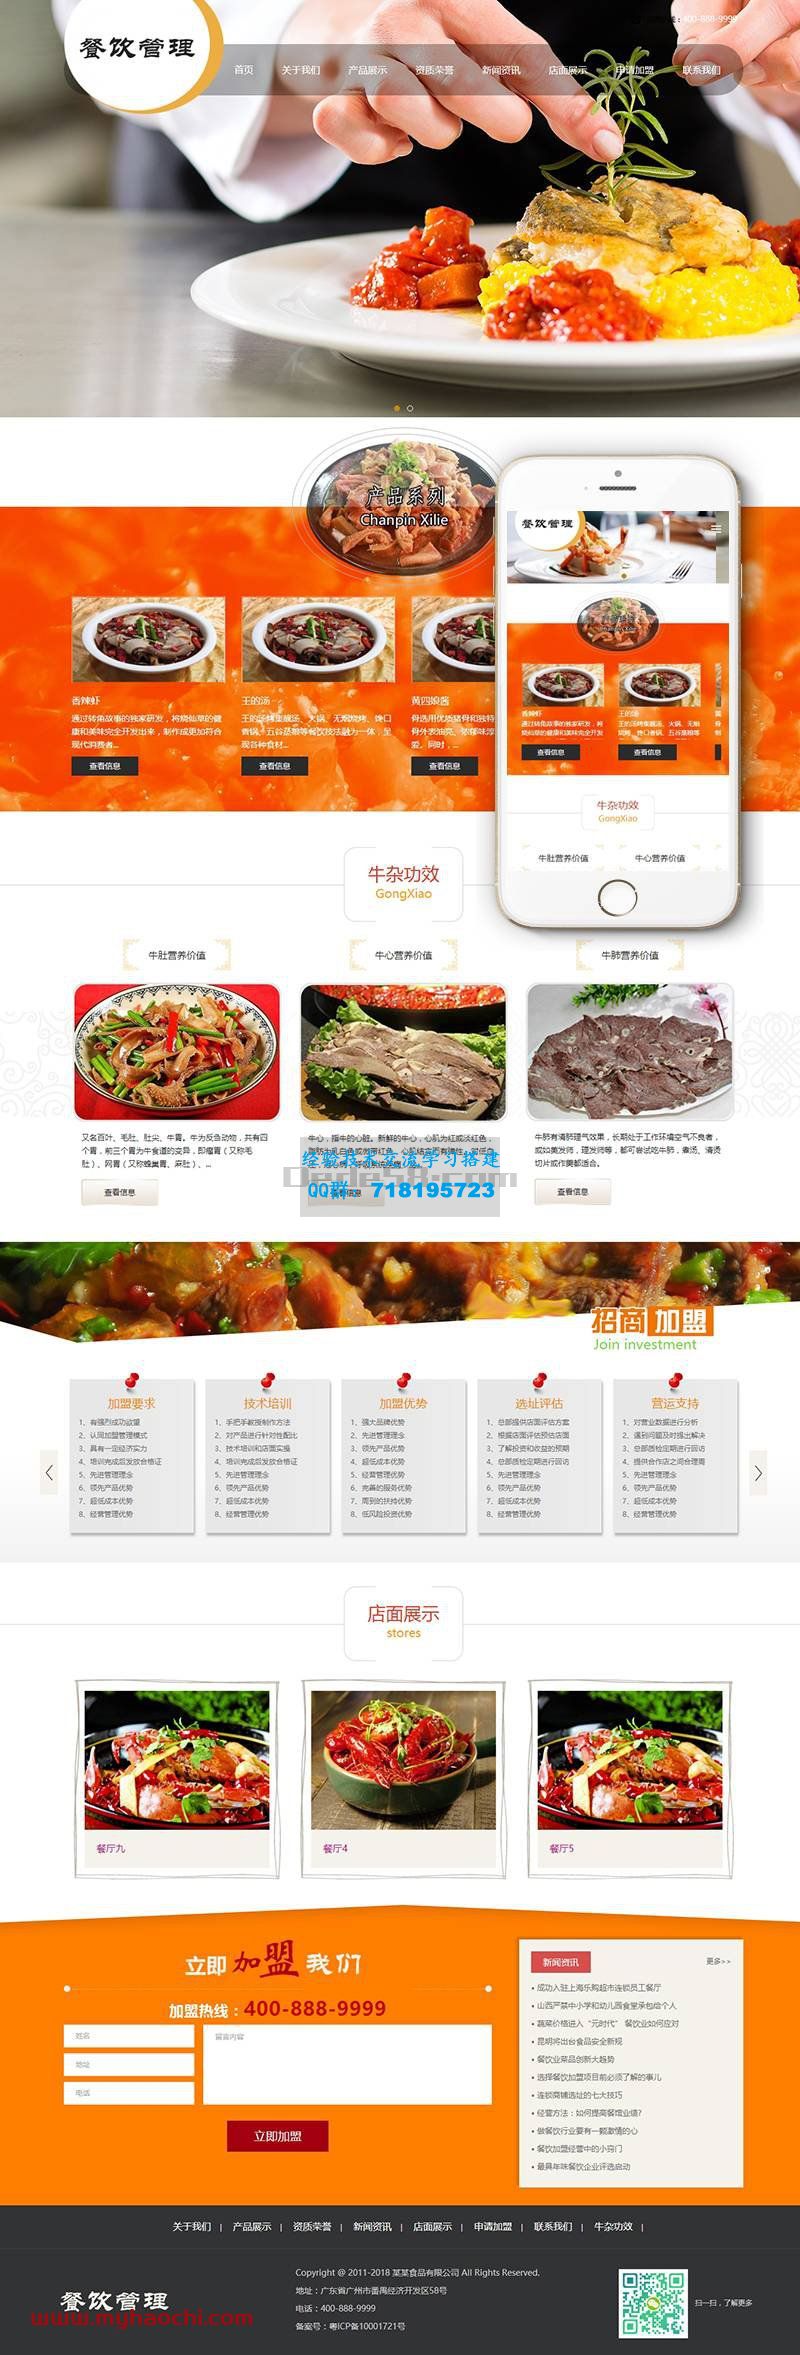     响应式餐饮牛杂小吃类网站源码 dedecms织梦模板 (带手机端)
